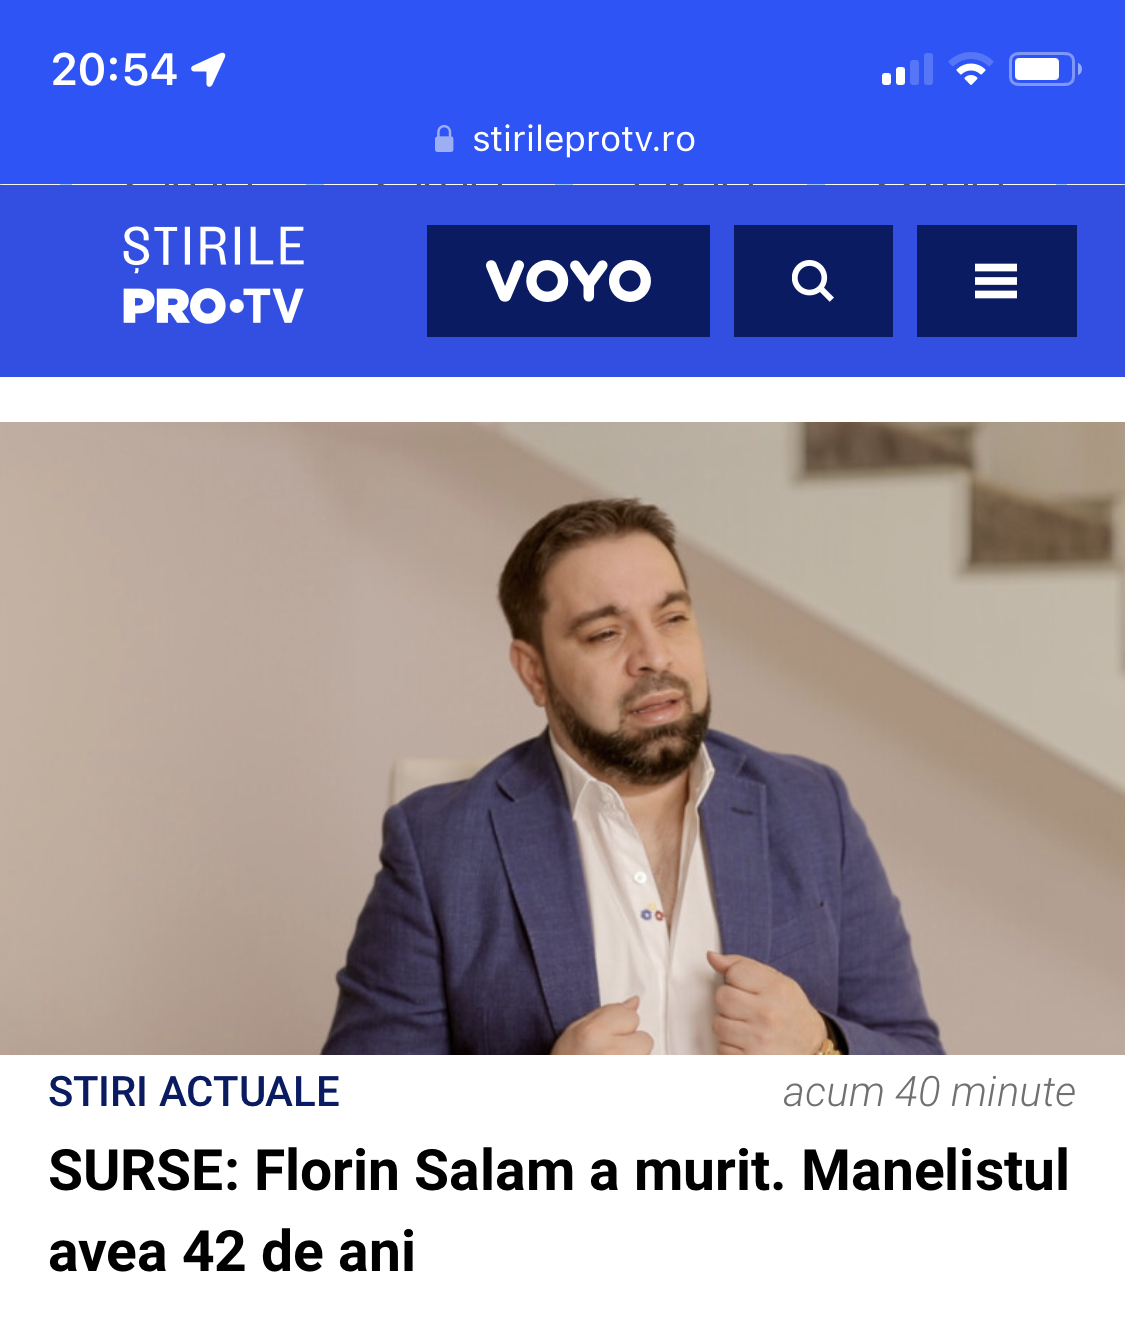 Florin Salam NU a murit. “Rușine Pro TV!” a scris manelistul pe Facebook